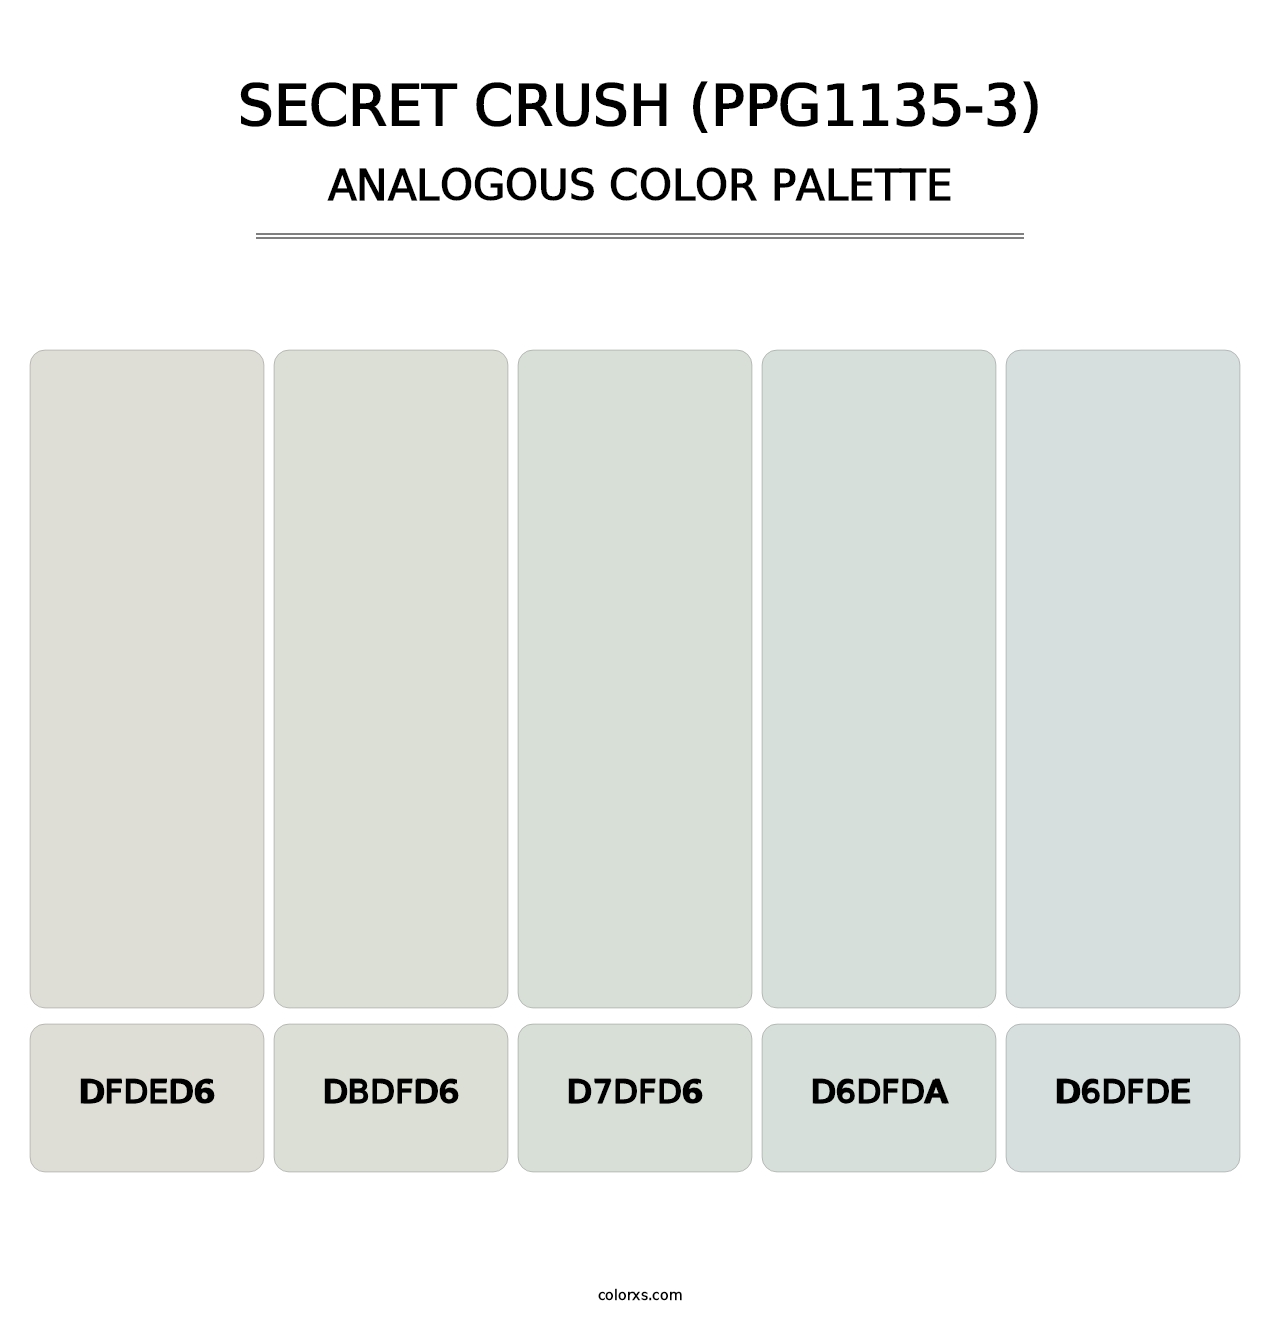 Secret Crush (PPG1135-3) - Analogous Color Palette